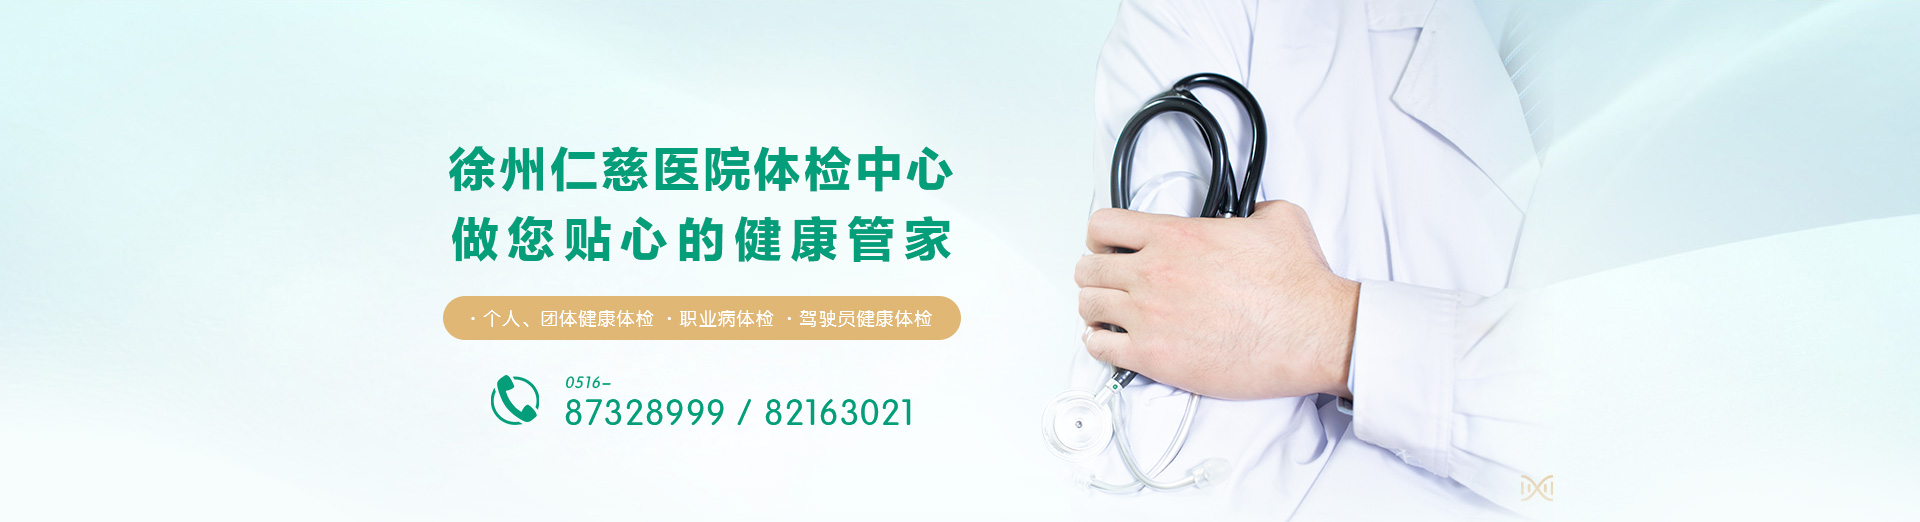 福盈门彩票官方网站体检中心 做您贴心的健康管家